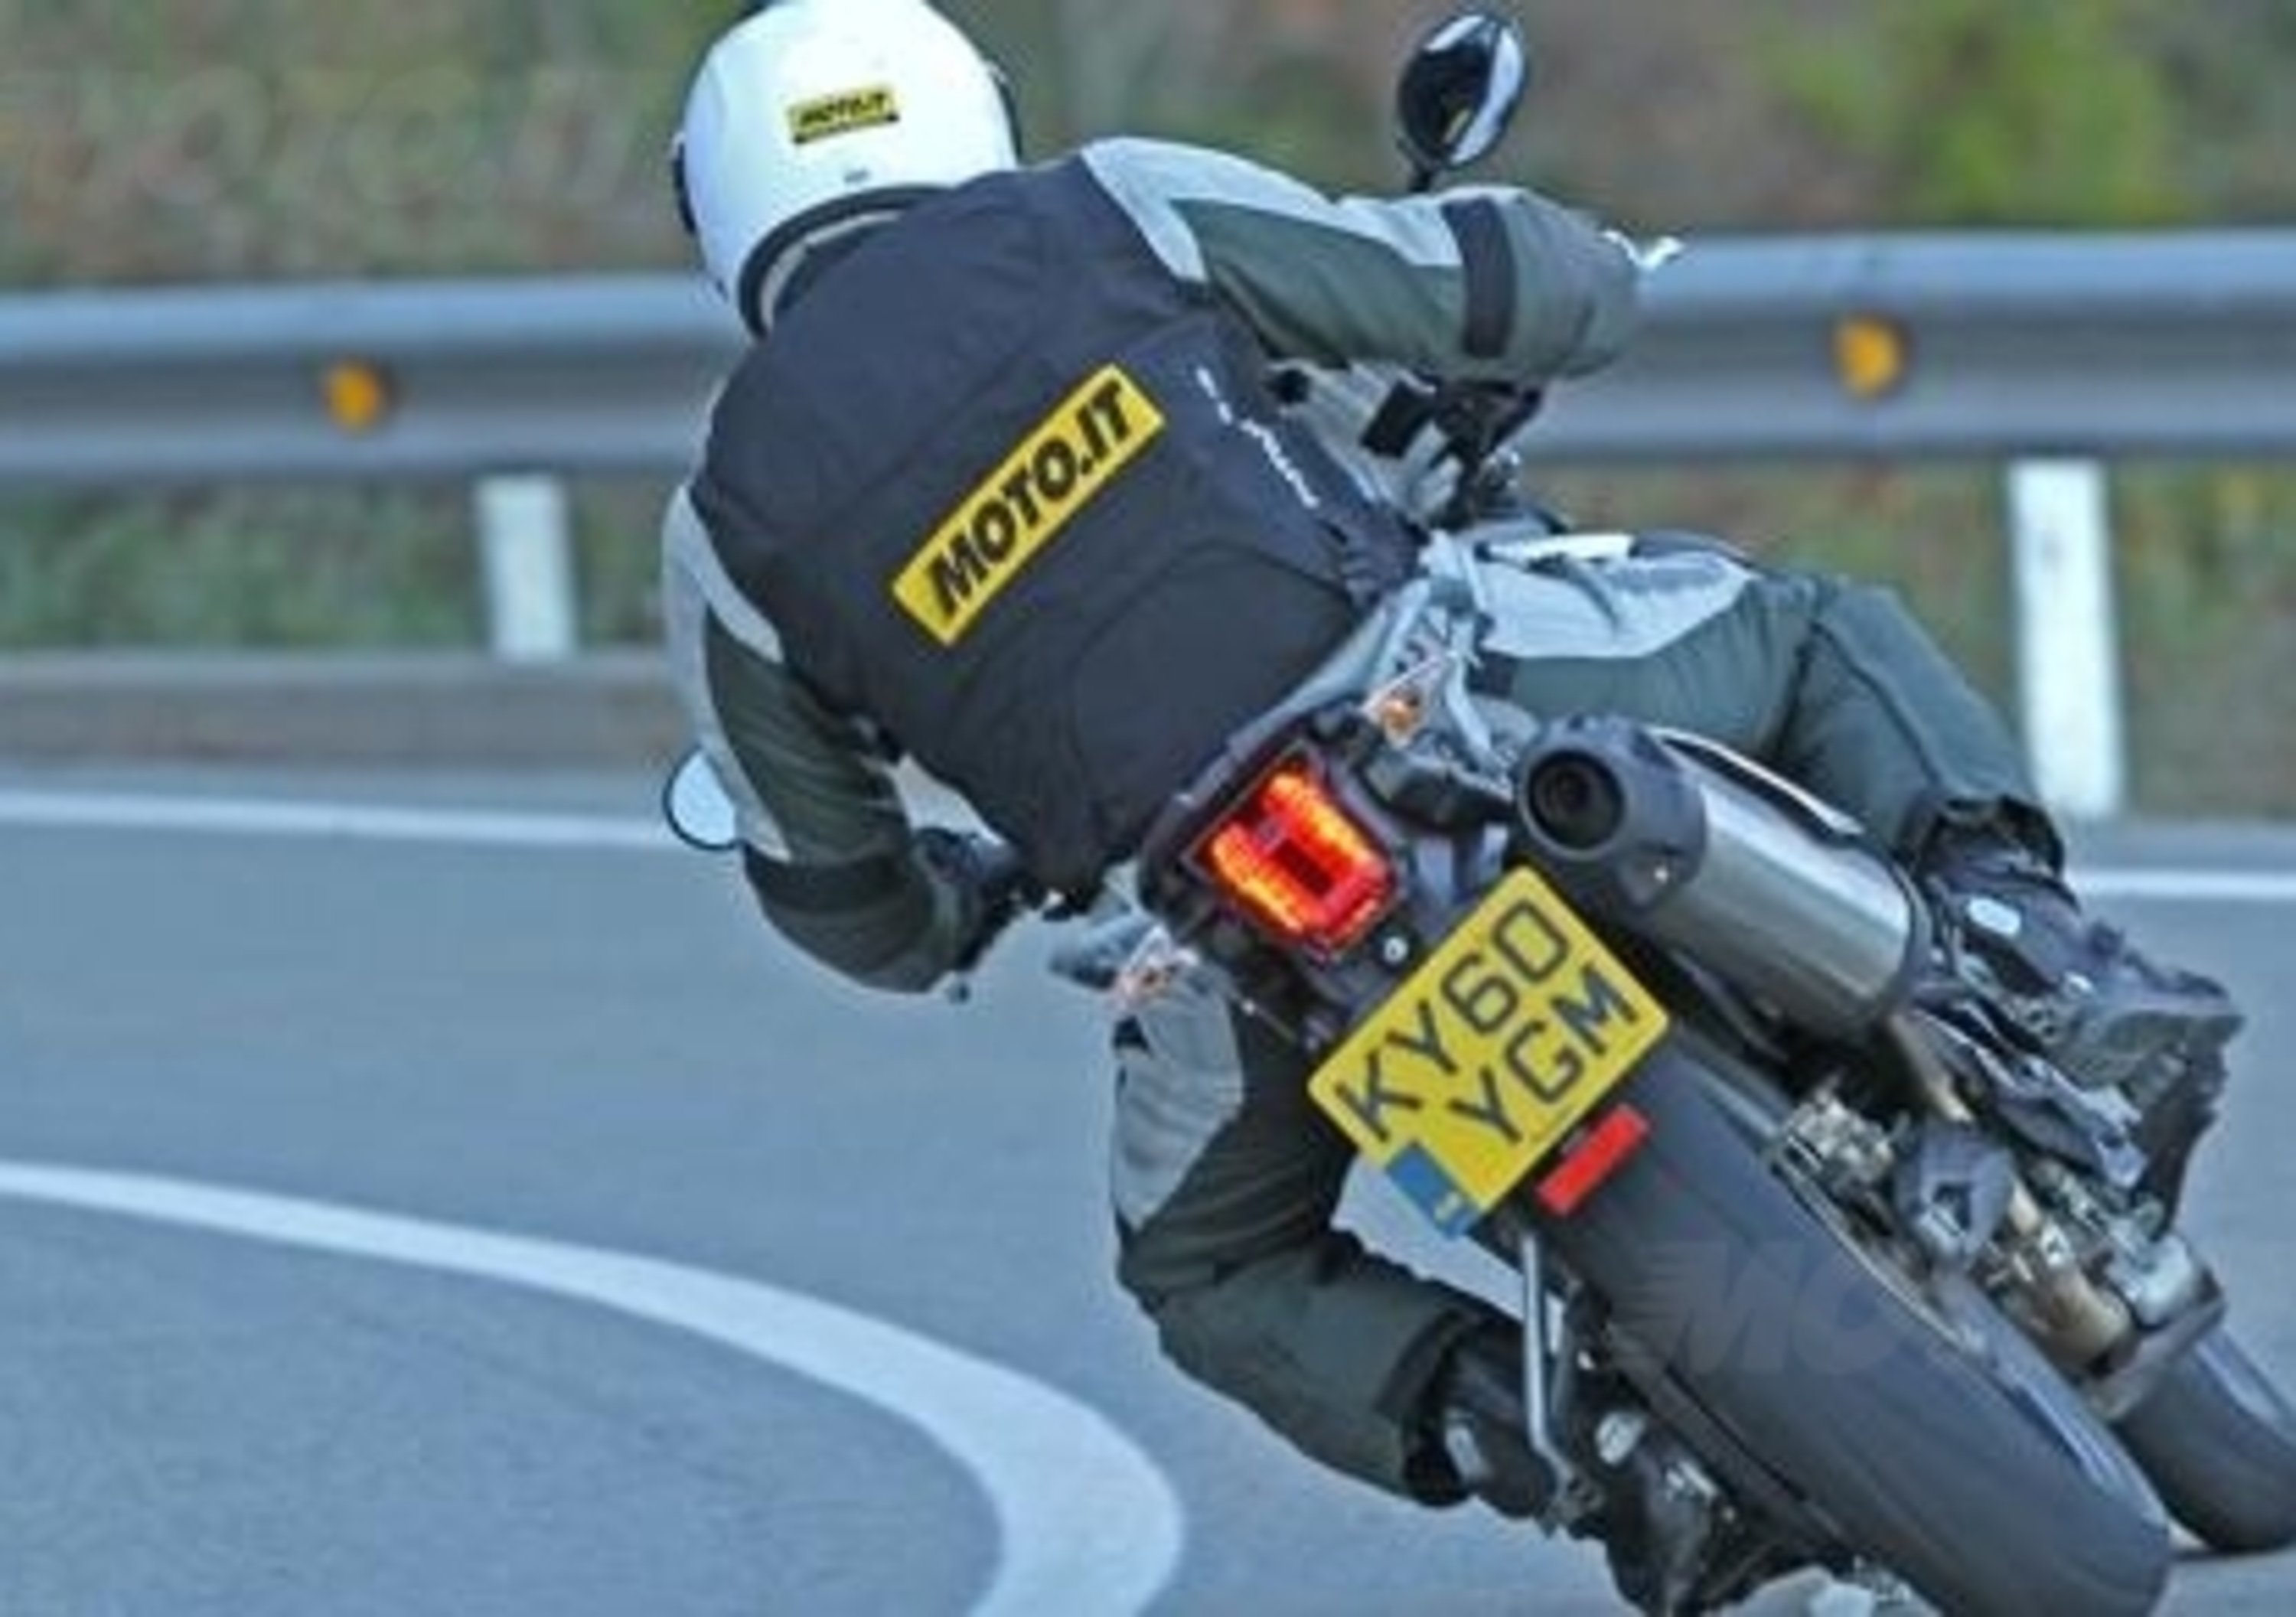 Airbag per motociclisti. Entro fine anno la nuova normativa UE